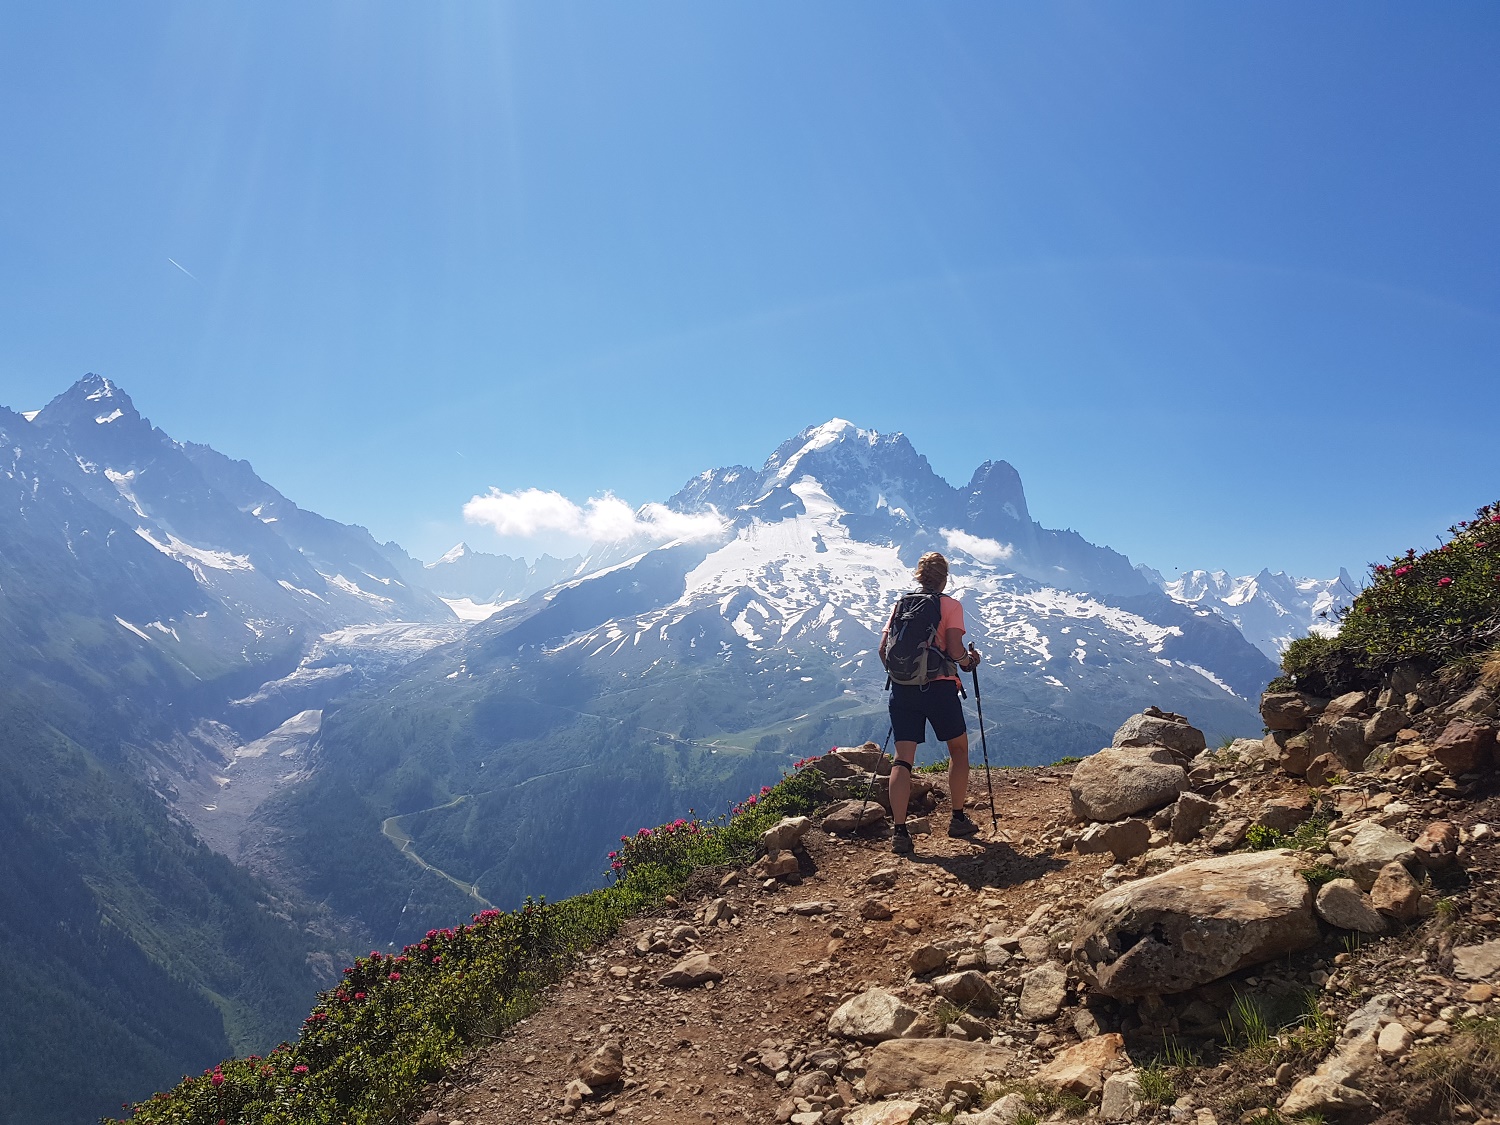 Jennifer hiking the Tour du Mont Blanc